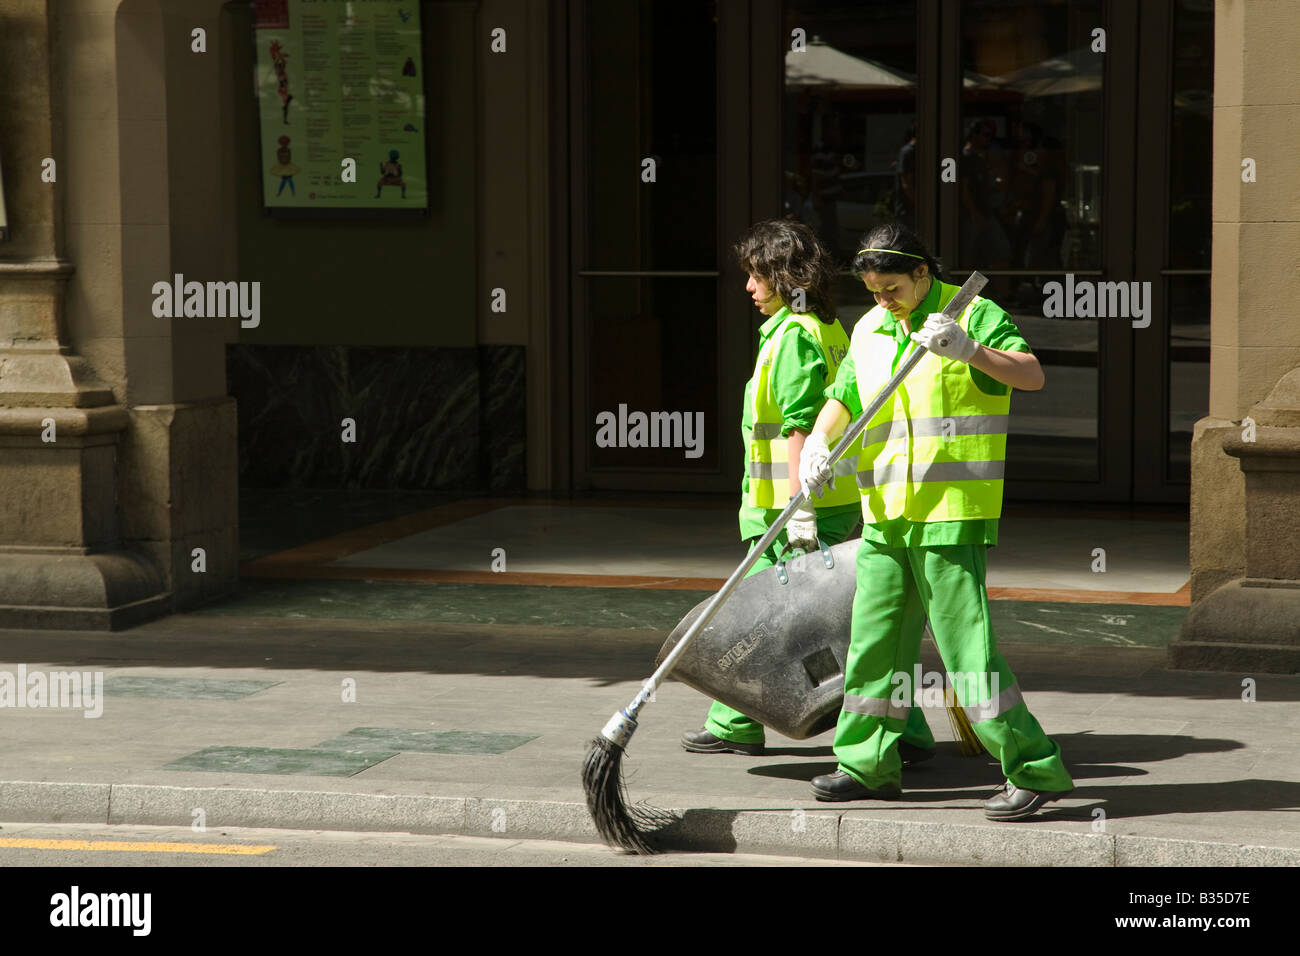 canal lema Sin alterar España Barcelona dos mujeres en uniformes de color verde brillante y  chalecos de seguridad utilizar la escoba para limpiar las aceras y recoger  la basura de Las Ramblas Fotografía de stock -